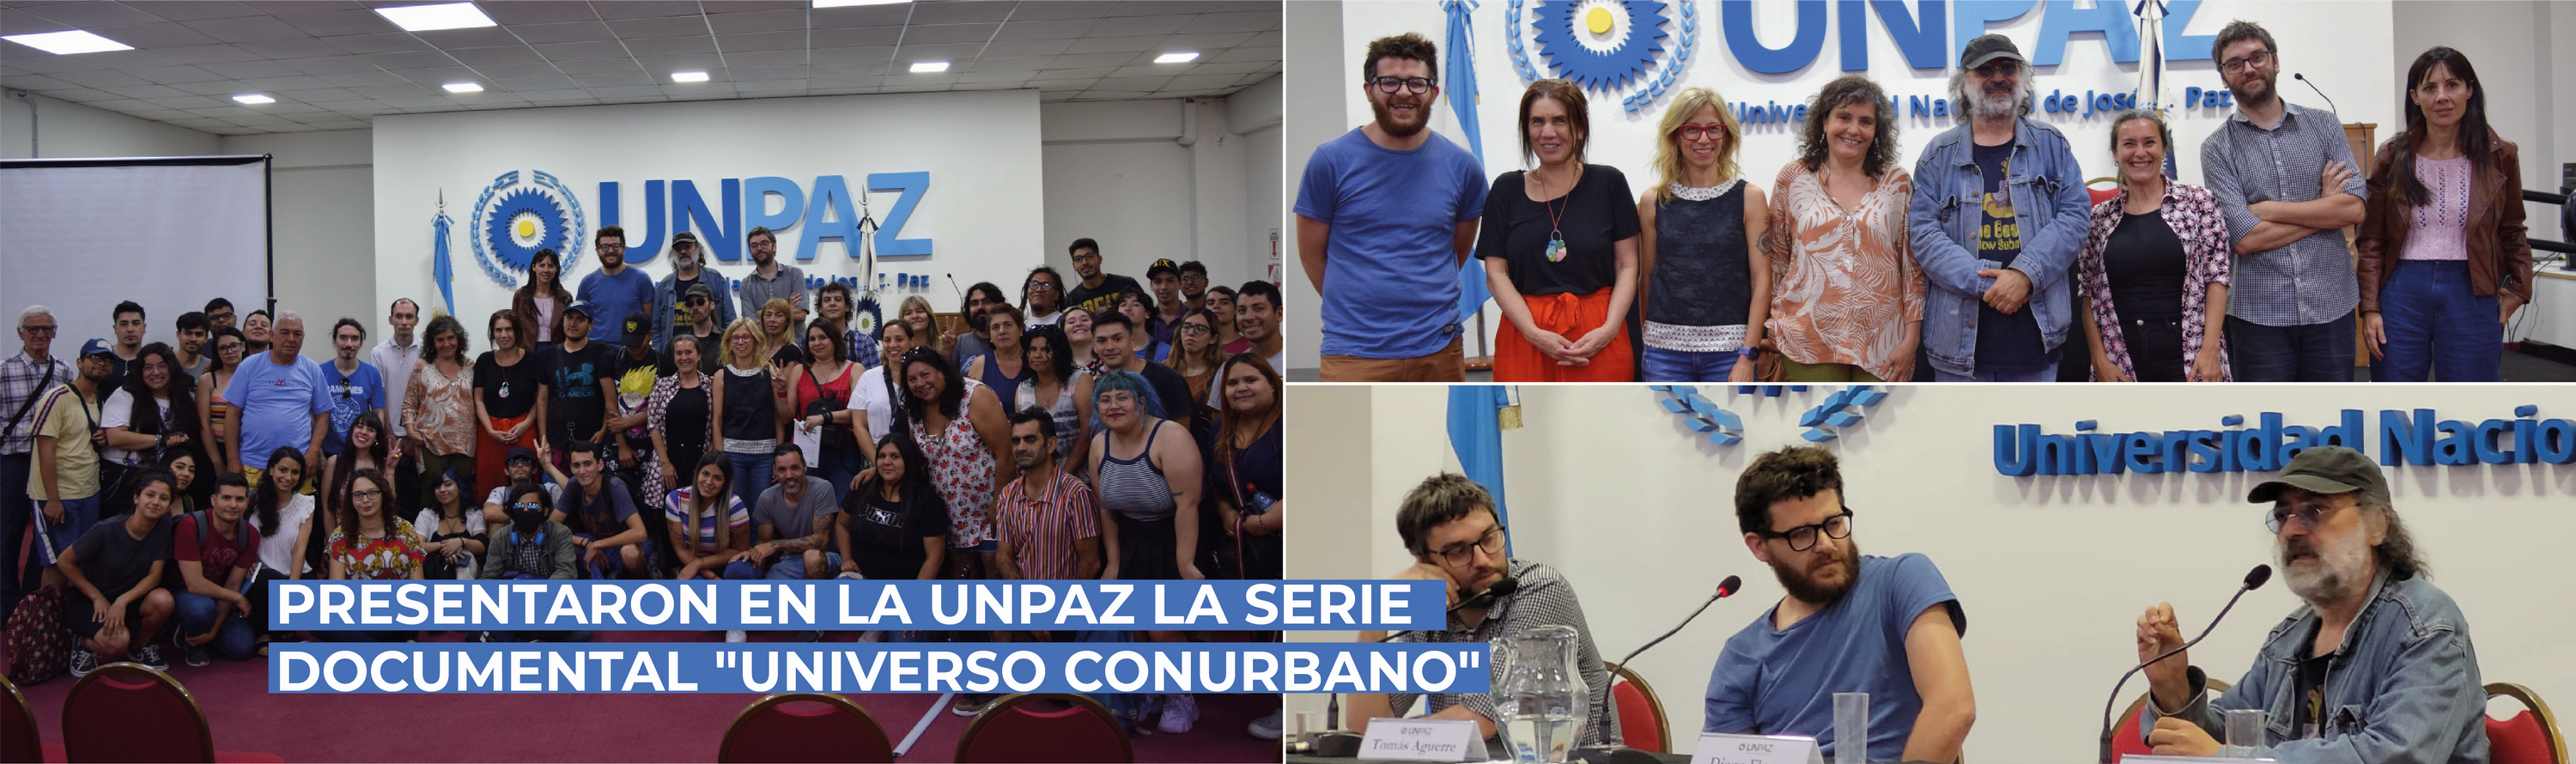 Presentaron en la UNPAZ la serie documental “Universo Conurbano”